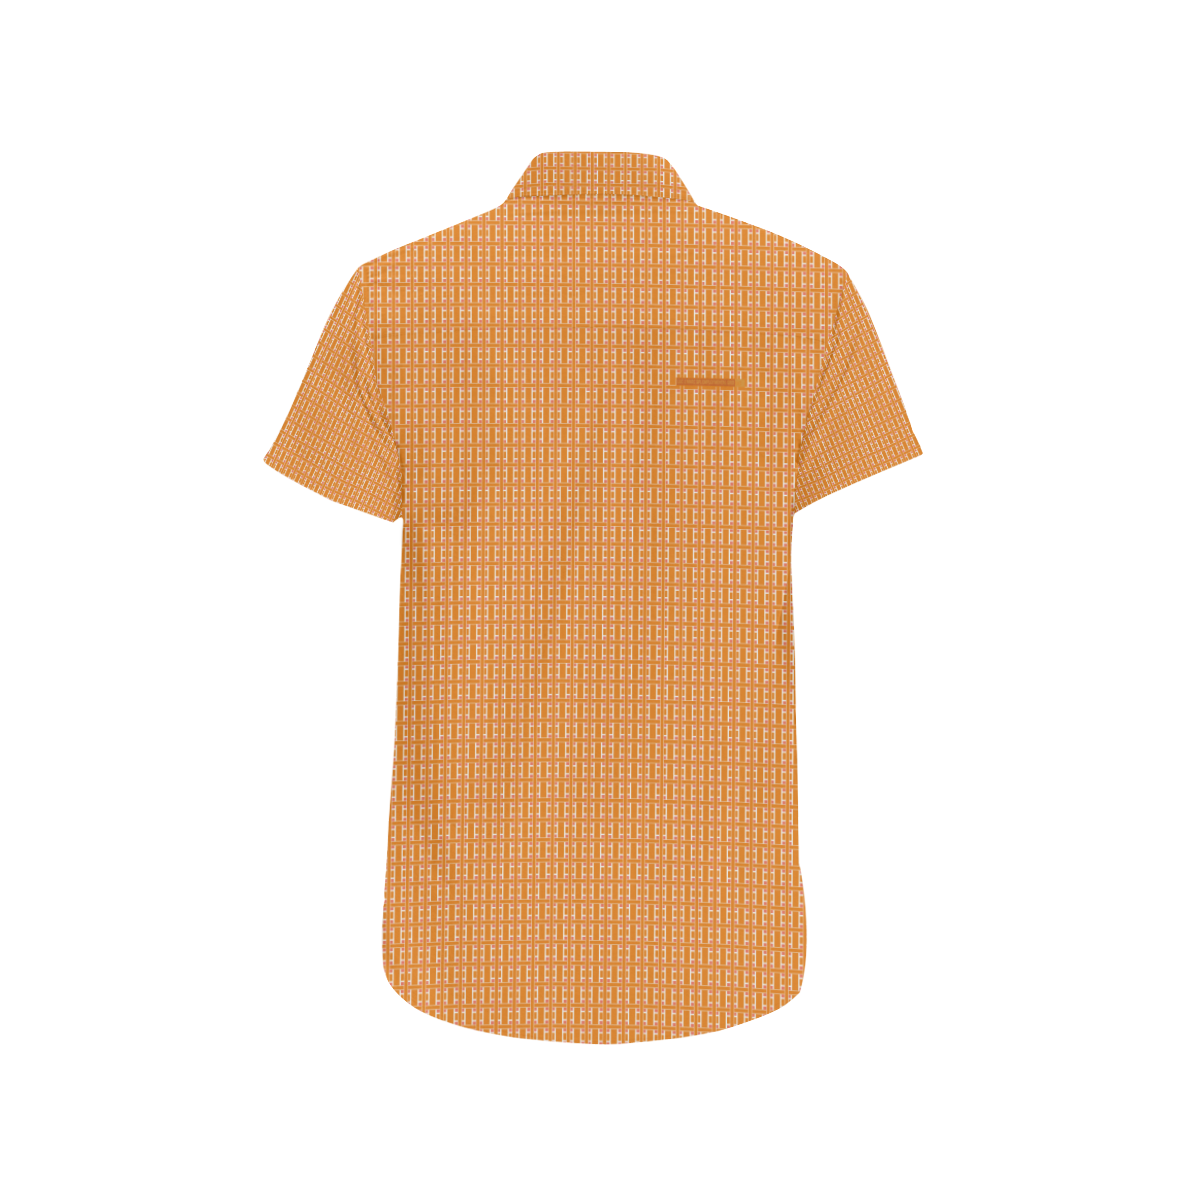 EmploymentaGrid 22 Men's All Over Print Short Sleeve Shirt (Model T53)